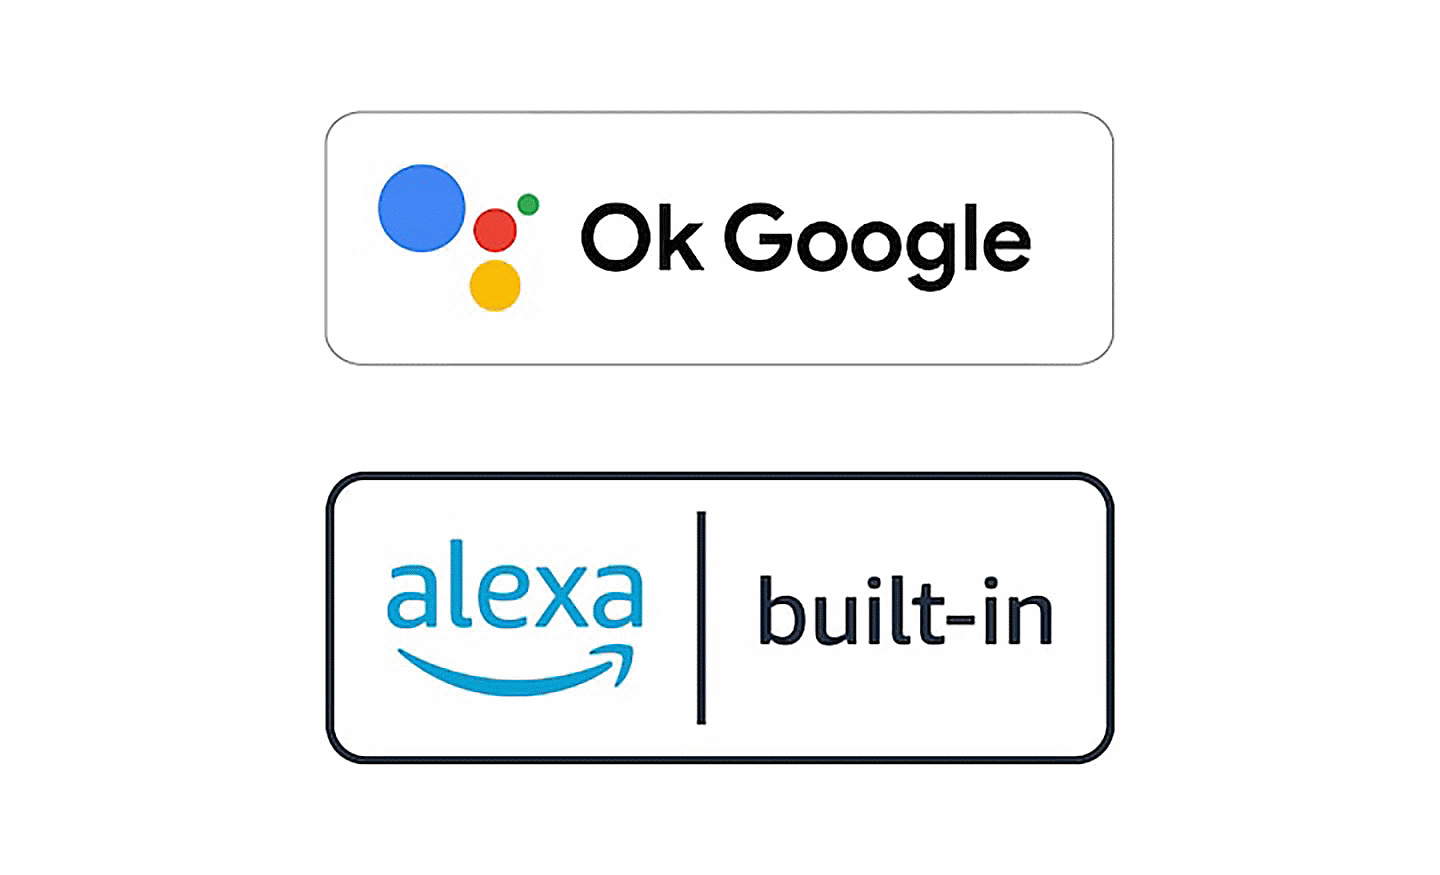 Hình ảnh logo Ok Google và logo alexa tích hợp sẵn